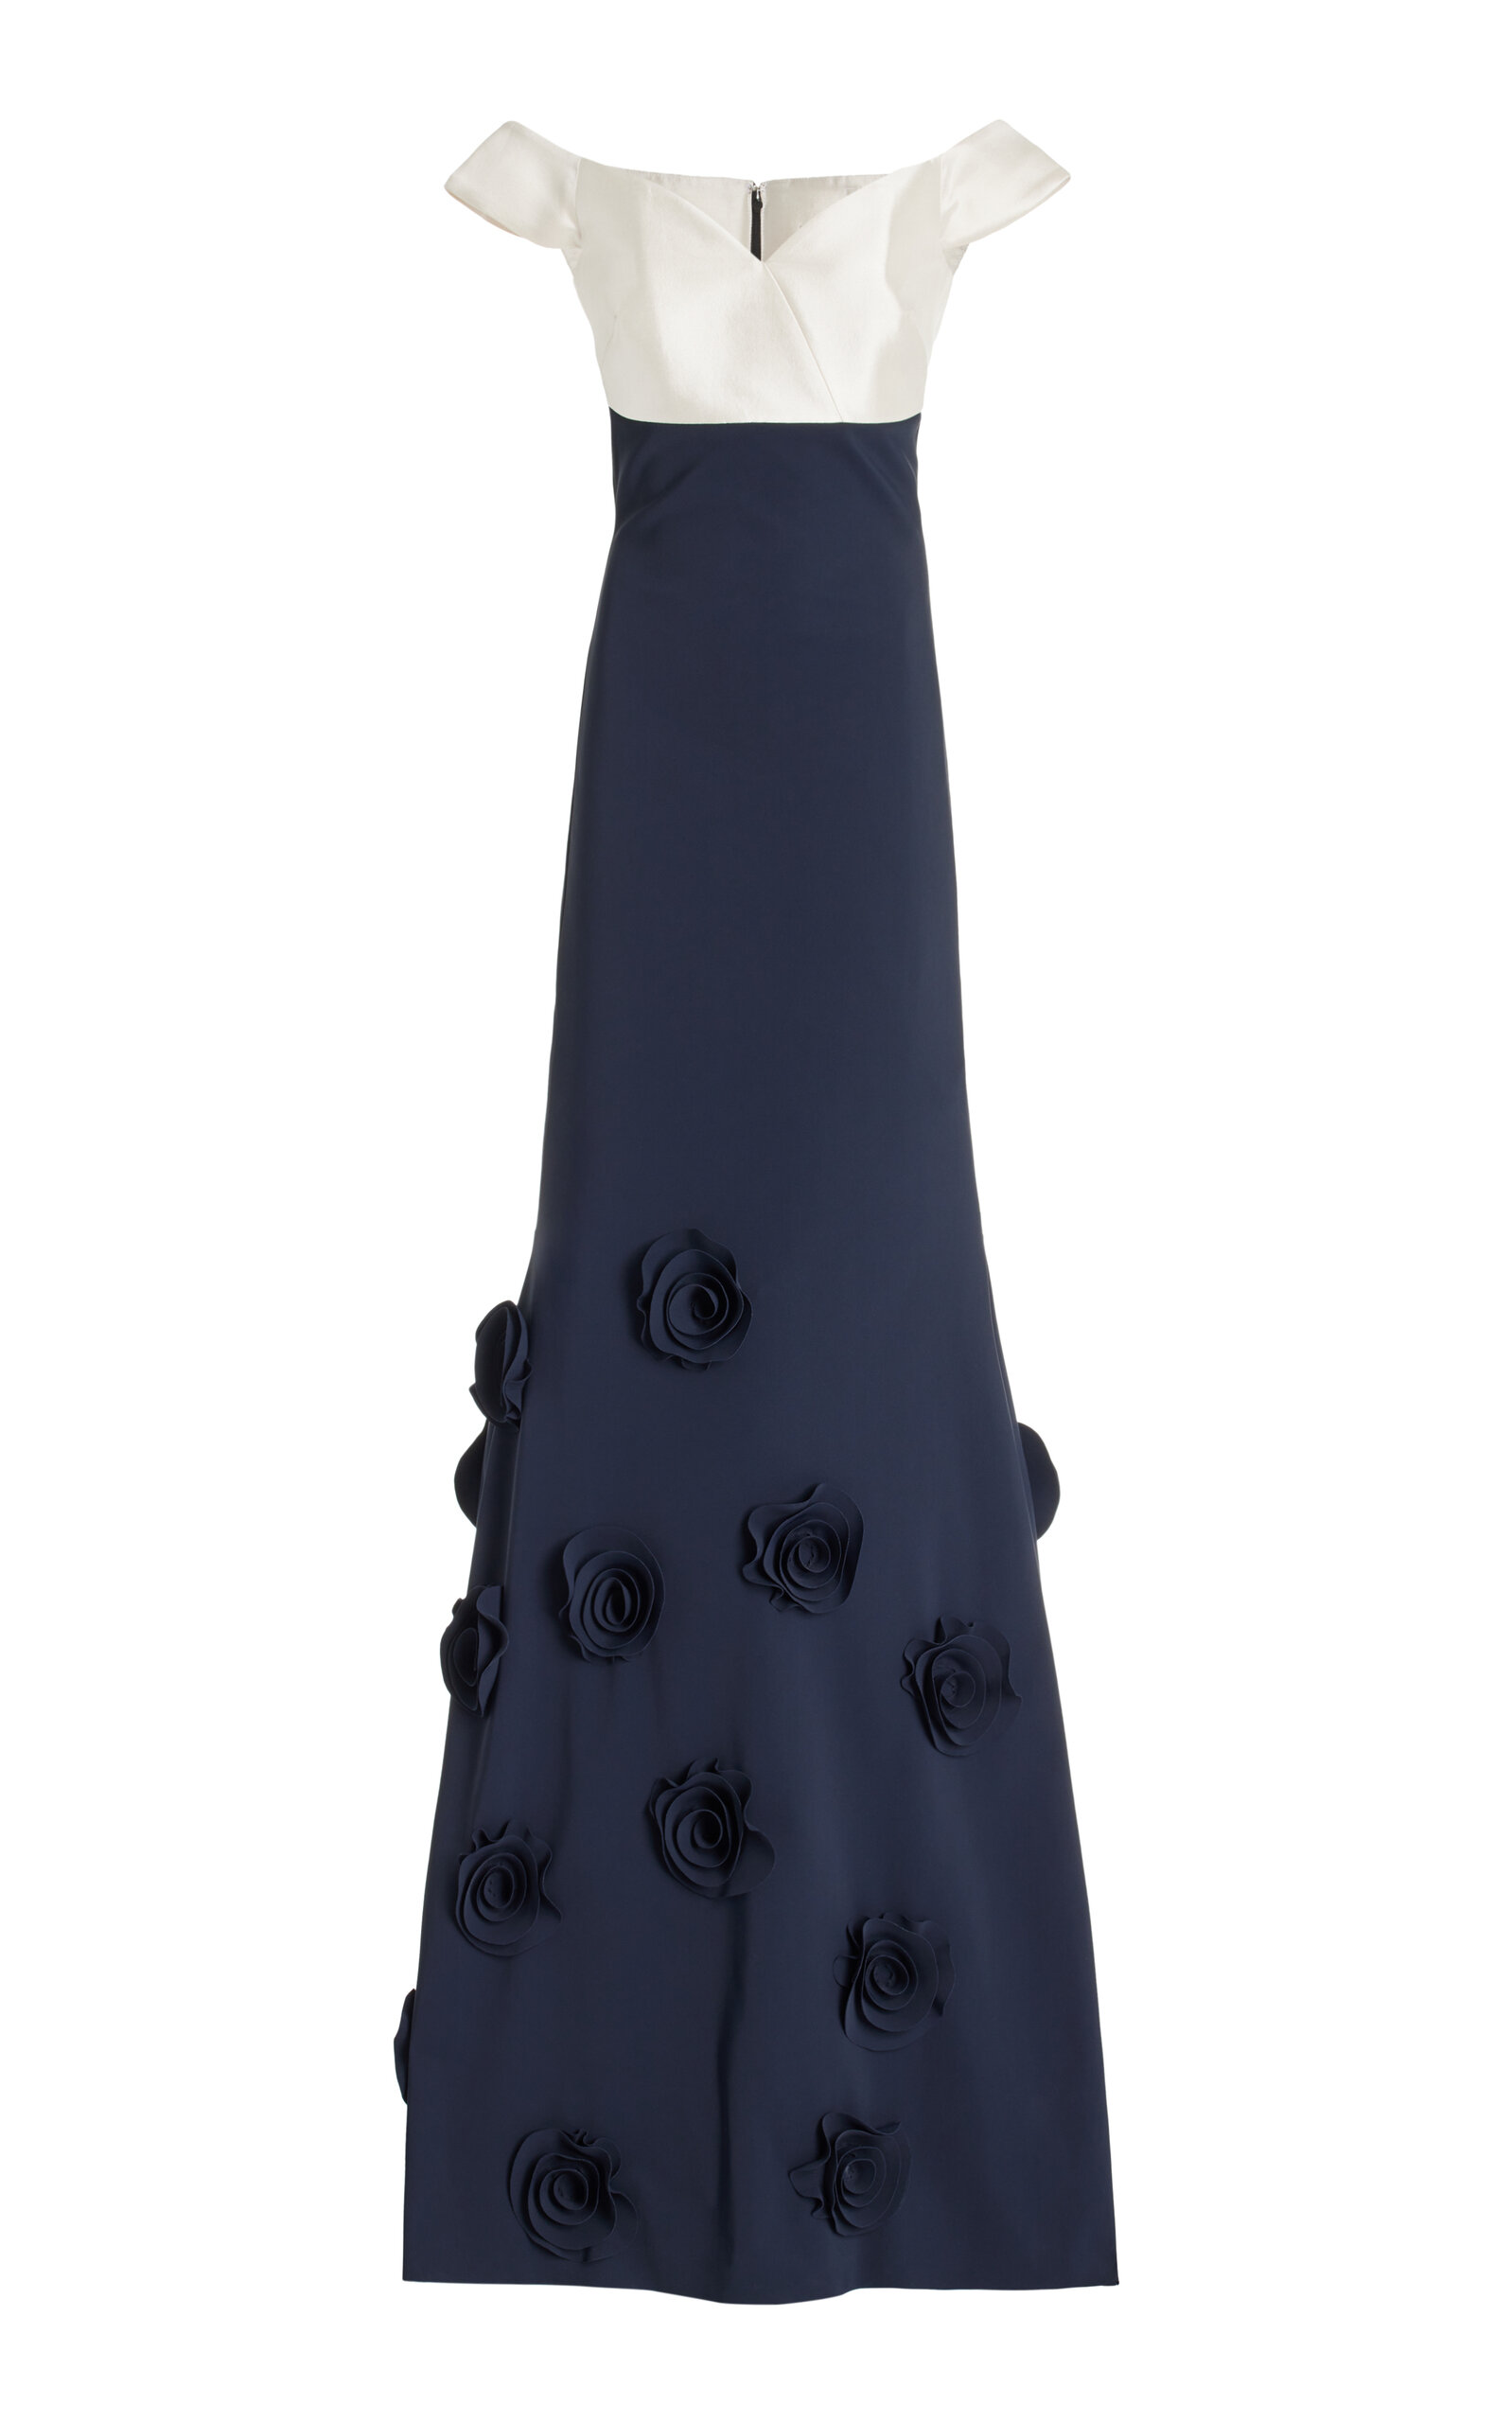 Goro Satin-Trimmed Rosette-Embellished Crepe Off-The-Shoulder Gown